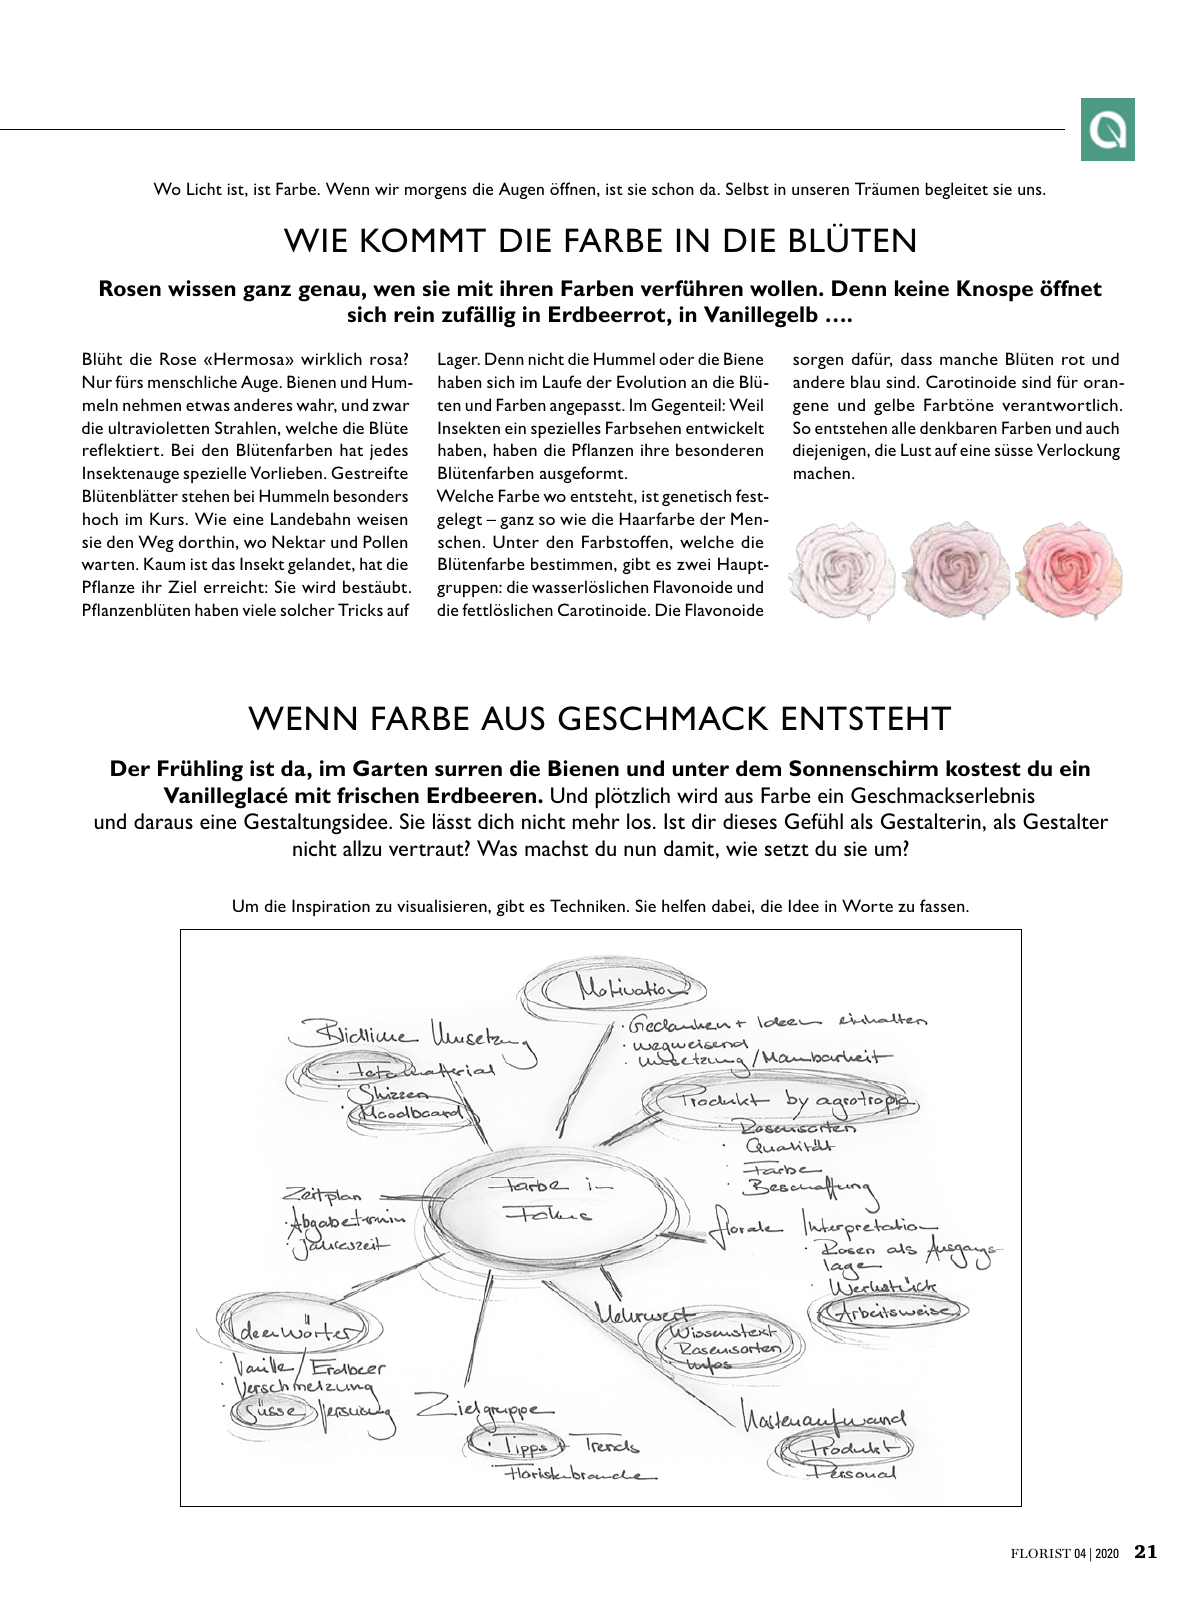 Vorschau Florist - Ausgabe April 2020 Seite 19